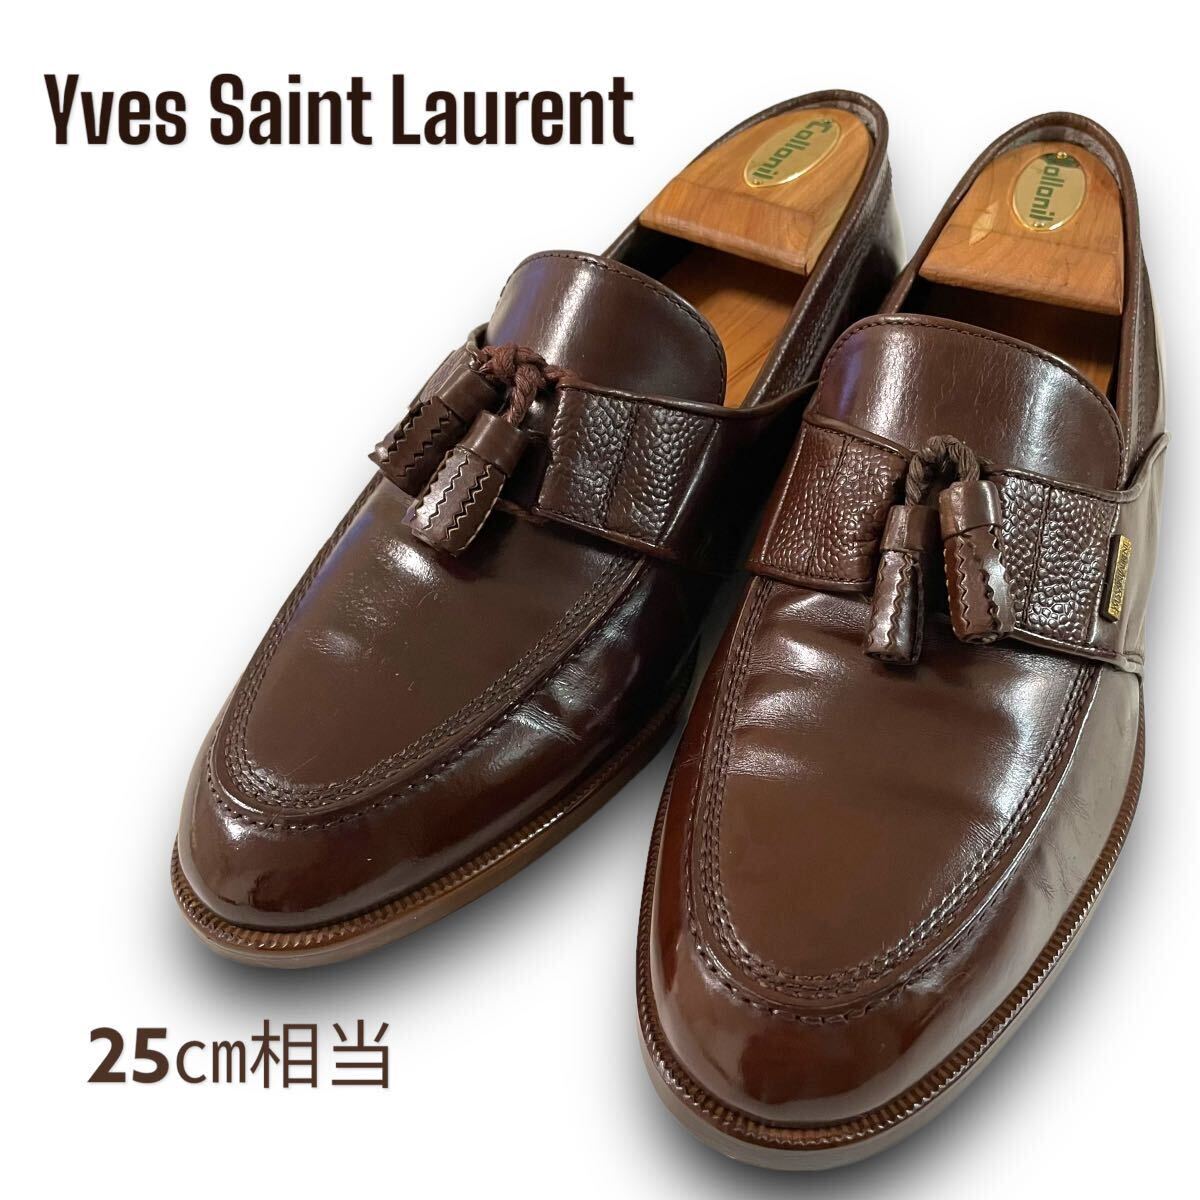 【1円出品】Yves Saint Laurent イヴ・サンローラン タッセルローファー 25cm相当 ブラウン ローファー レザー レザーシューズ 革靴 _画像1